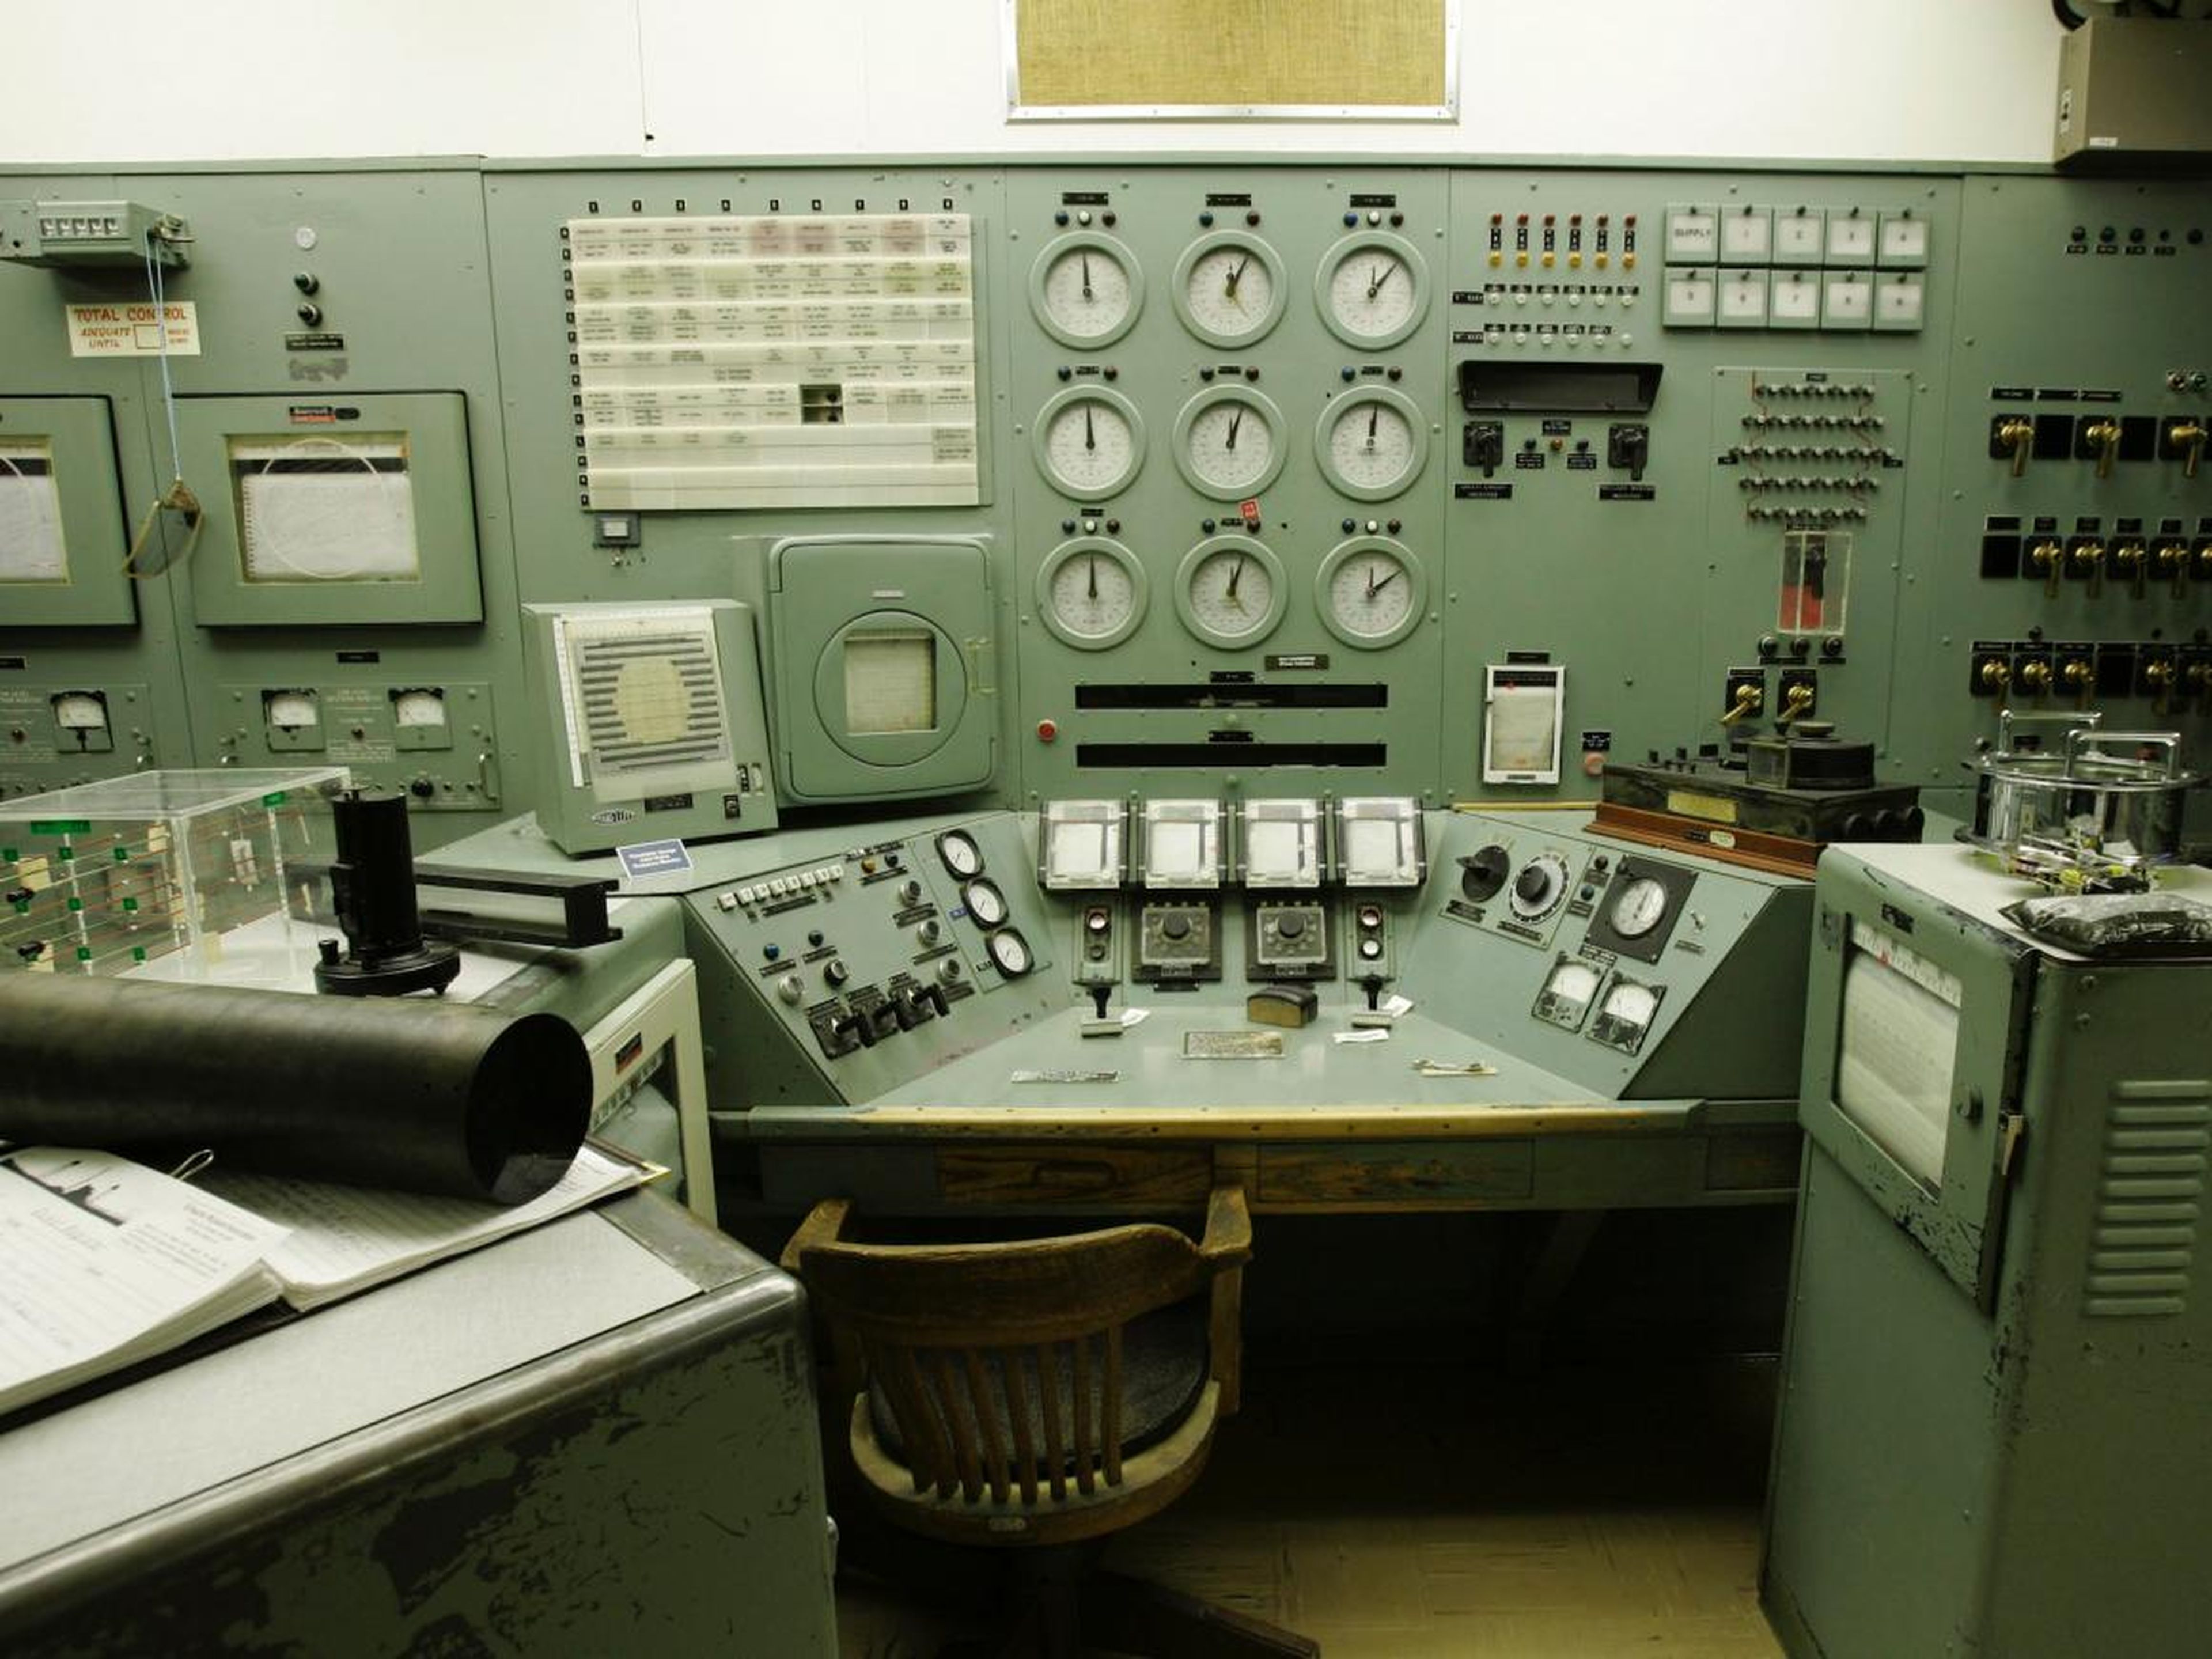 El reactor "B" fue el primer reactor nuclear a gran escala jamás construido. Esta es su sala de control.